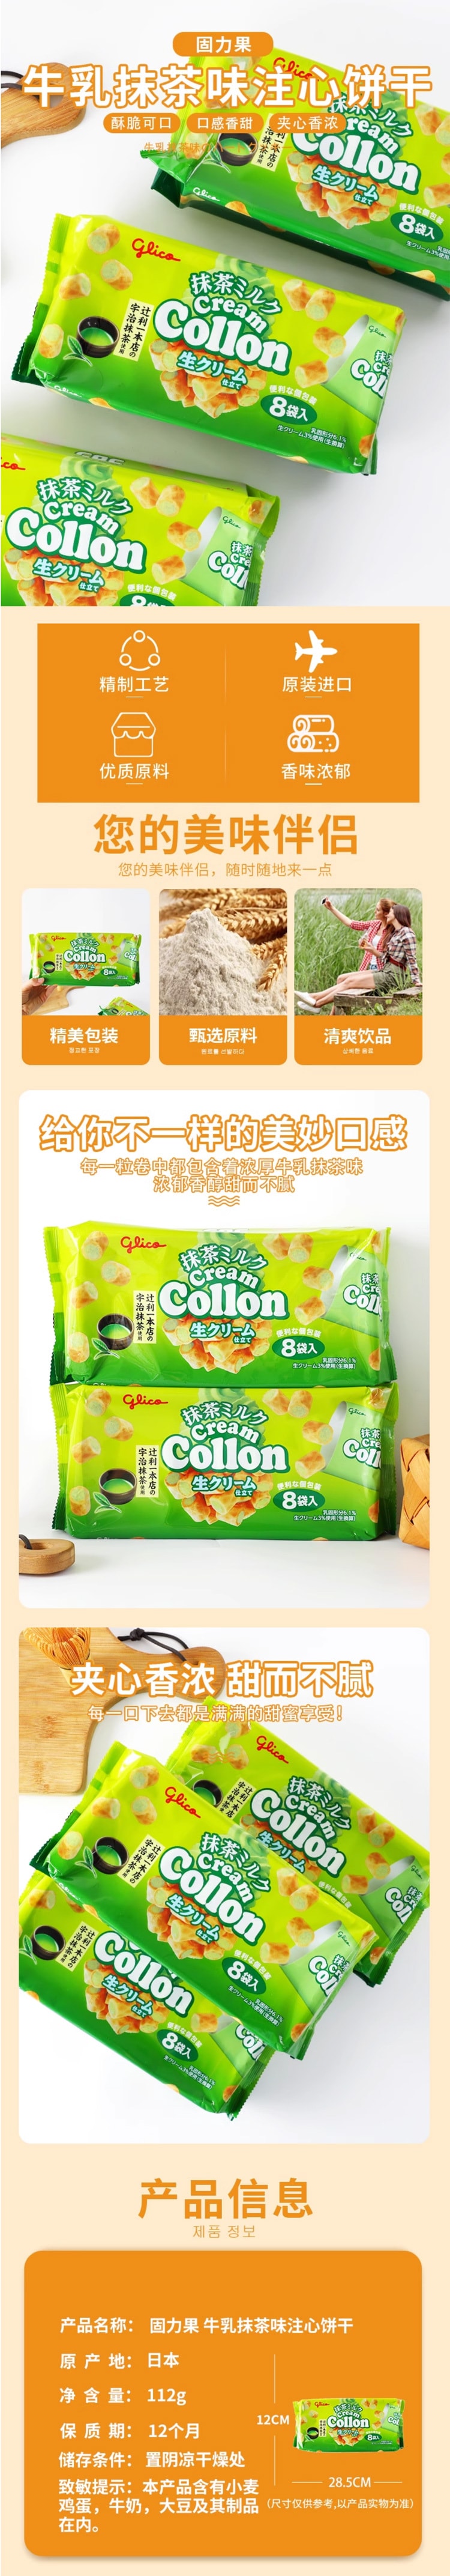 【日本直郵】Glico格力高 Collon 抹茶牛奶卷 8袋入